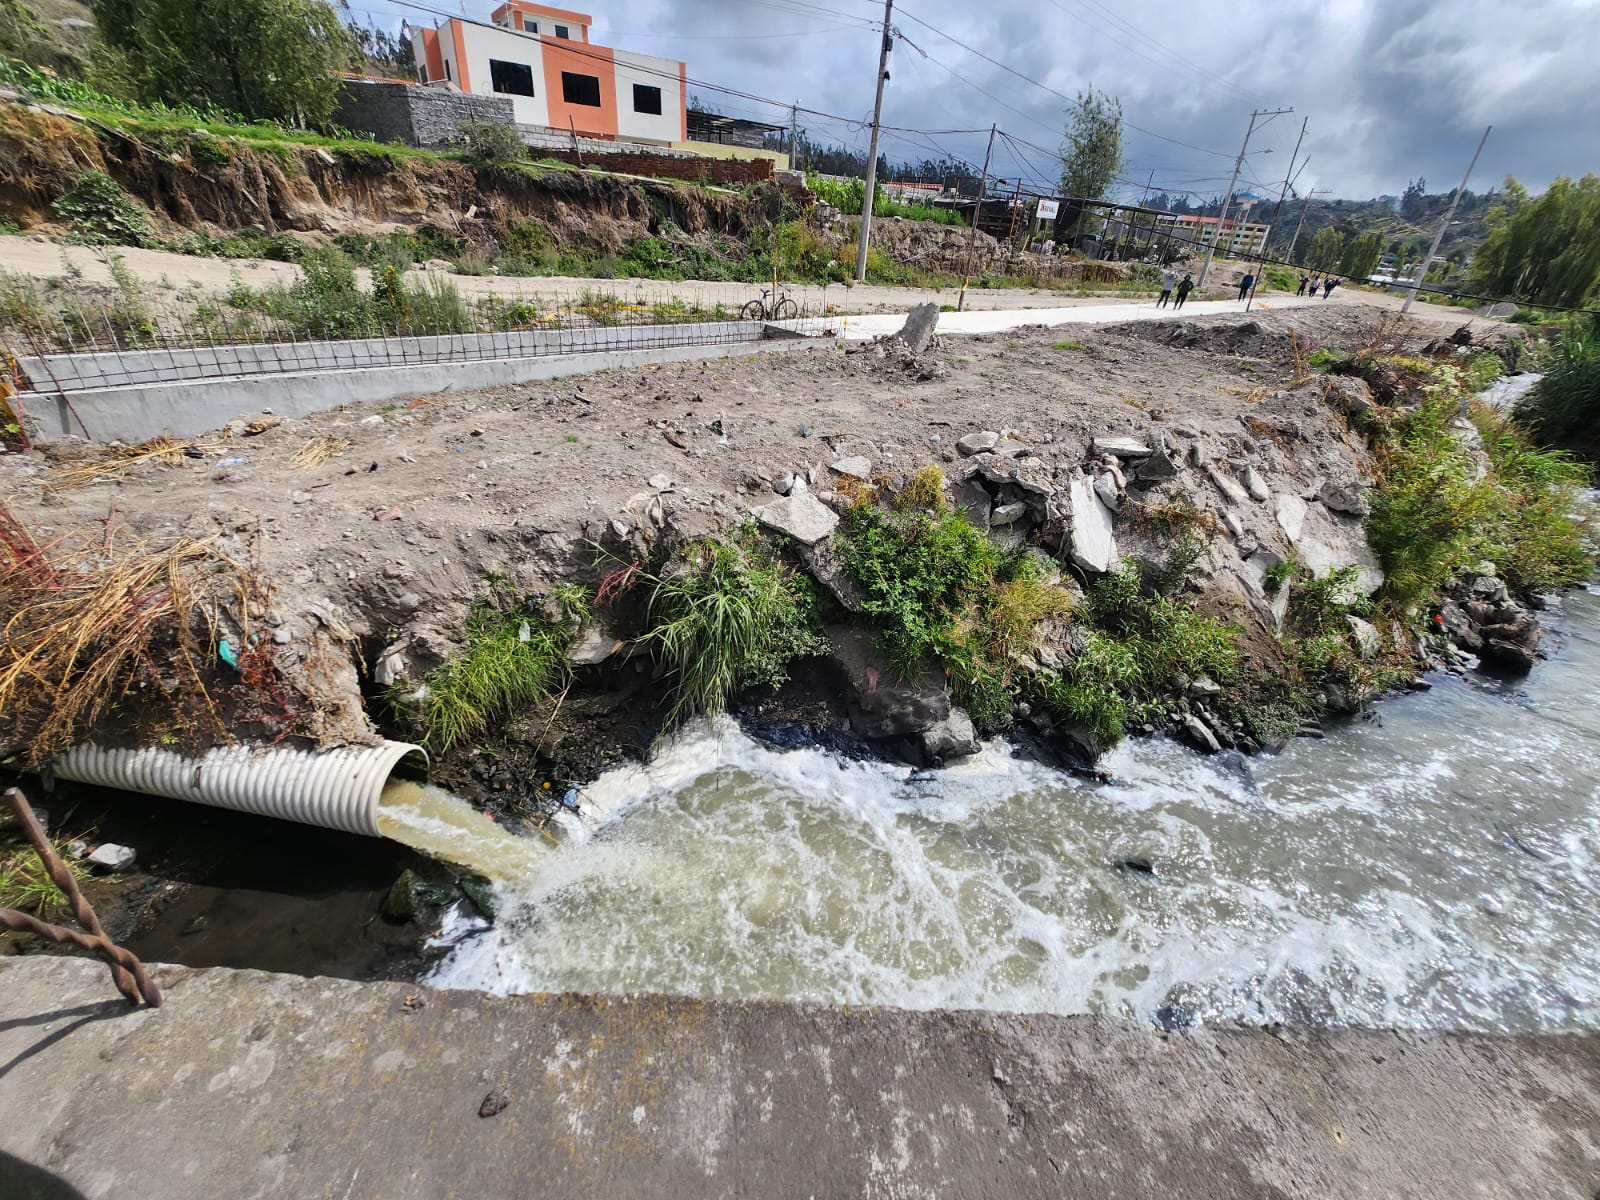 El paso de las aguas servidas genera pestilencia, contaminación y problemas en la quebrada de Picaihua.